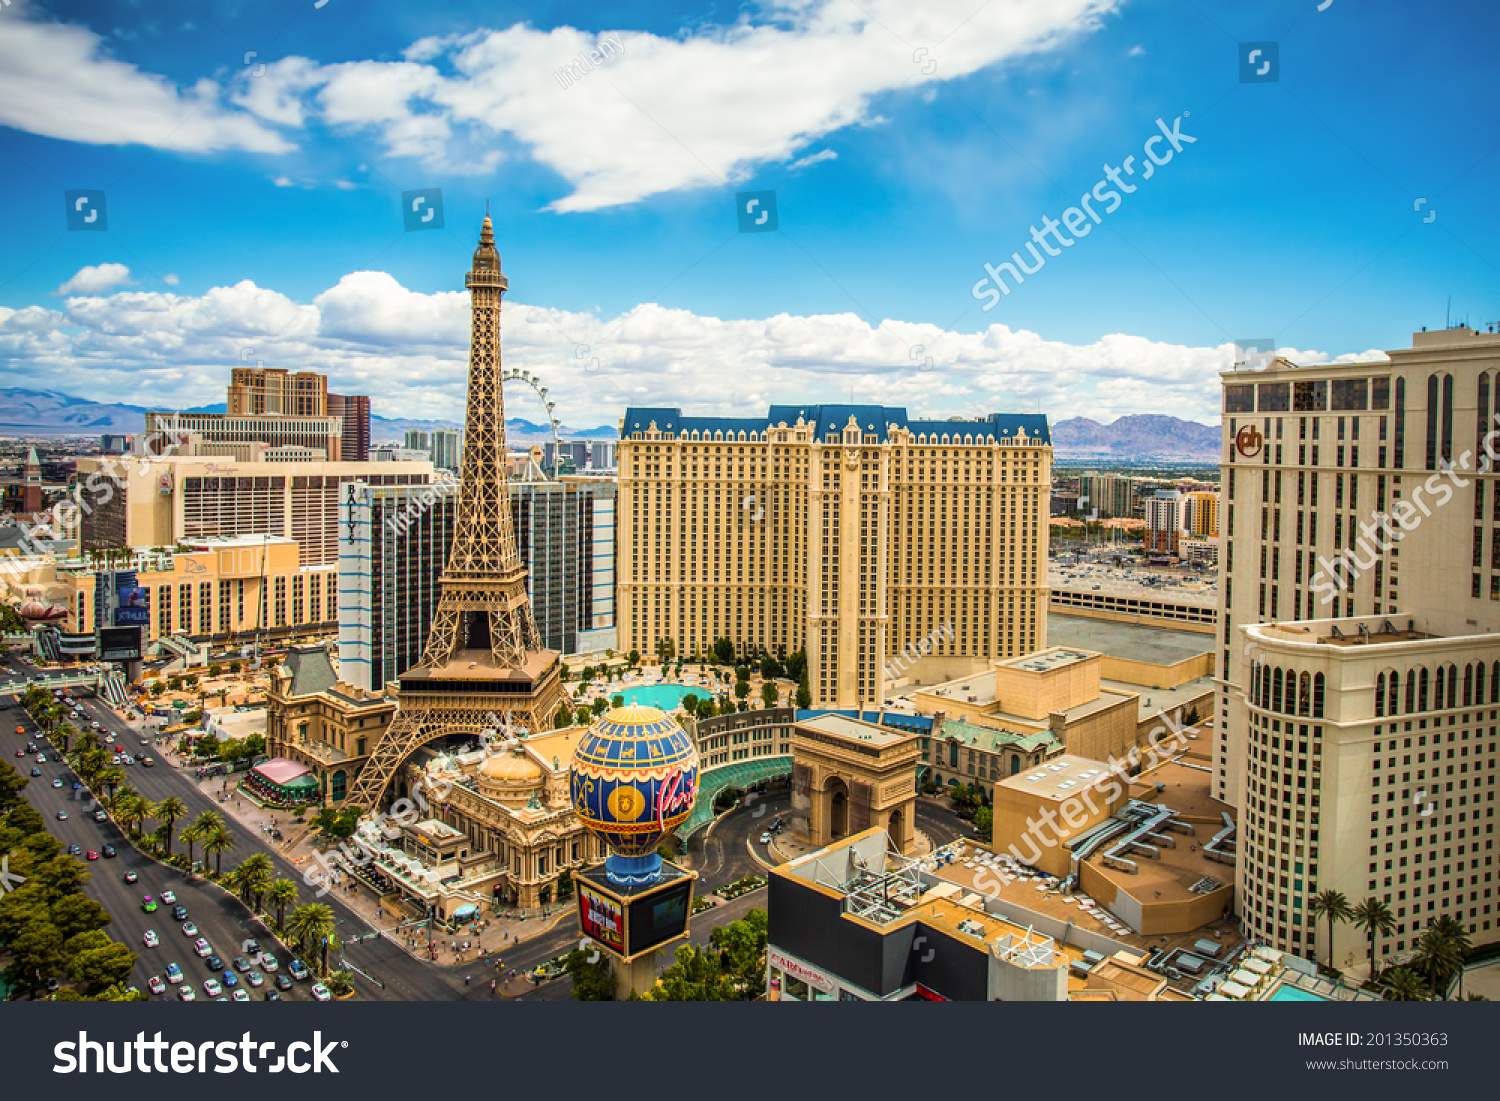 Las Vegas, Nevada - May 7, 2014: Above Ground View Of Las Vegas Strip ...